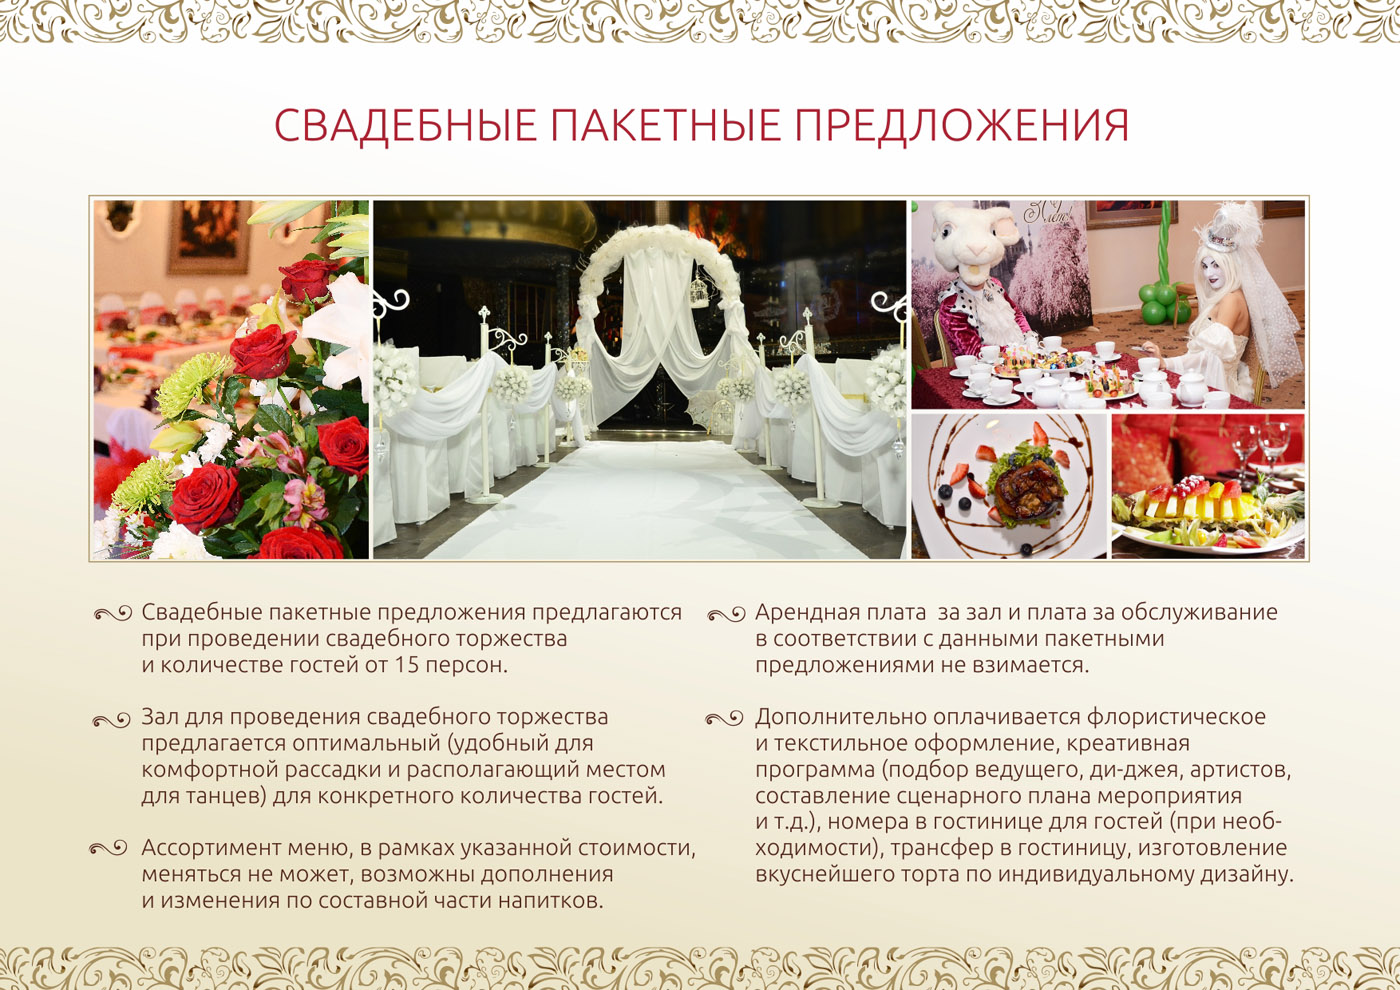 Примерное меню на свадьбу, чтобы гости не ушли голодными